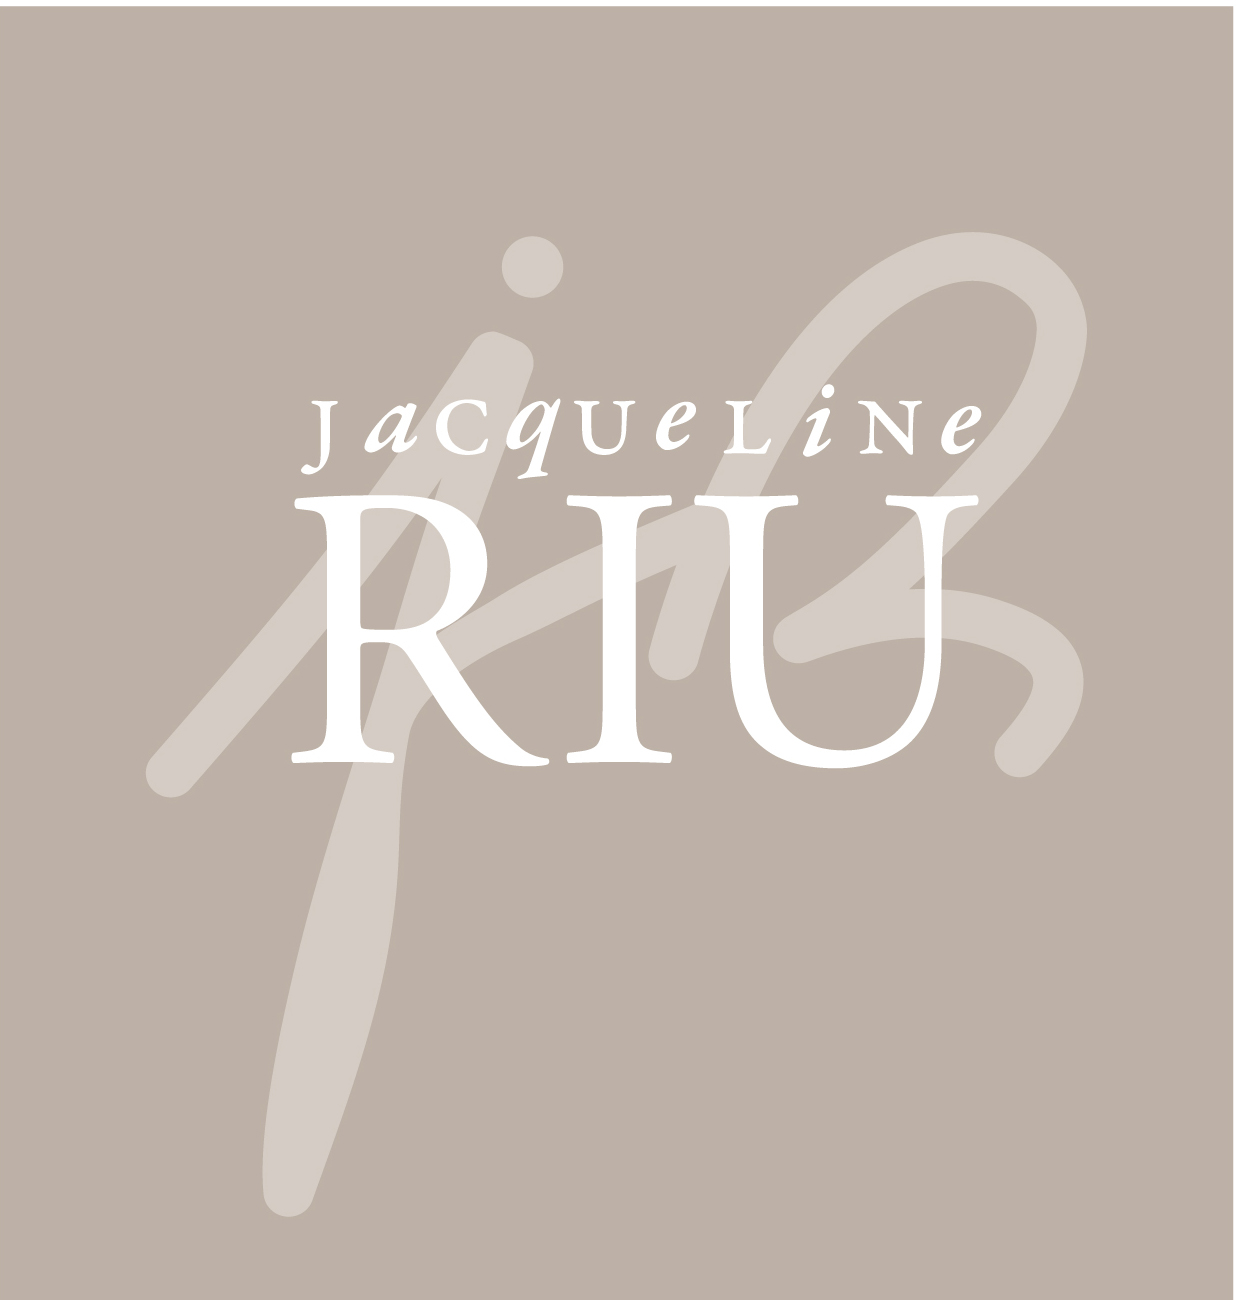 www.toutesvosmarques.com : JACQUELINE RIU propose la marque JACQUELINE RIU